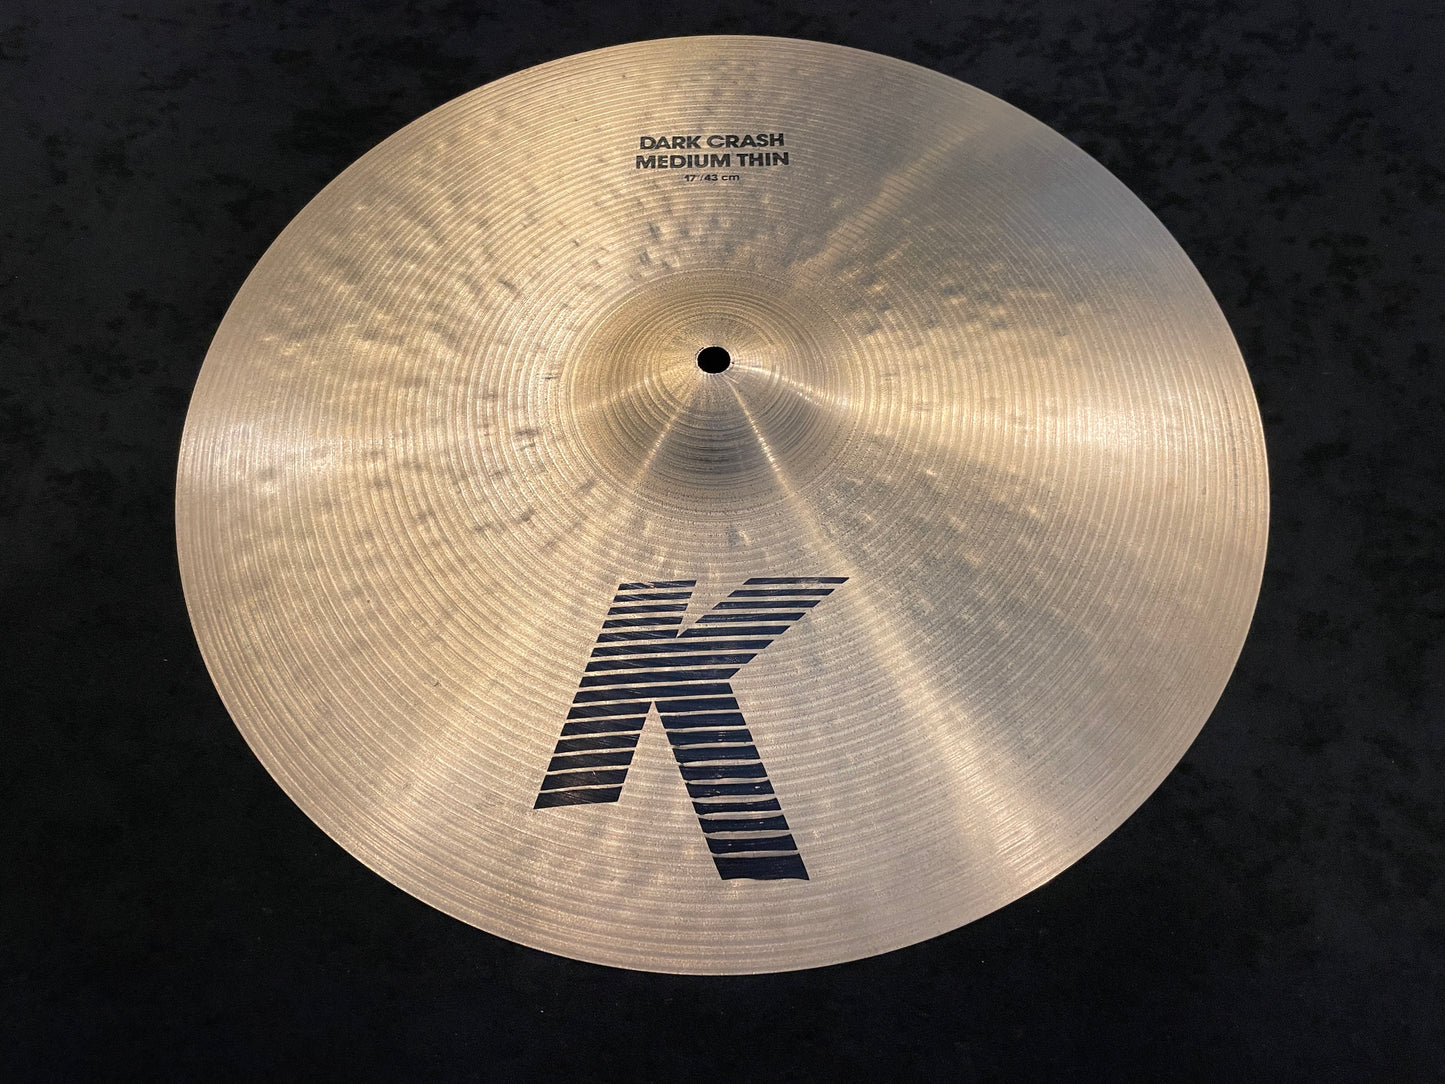 17" K Zildjian Dark Crash Medium Thin Cymbal 1366g